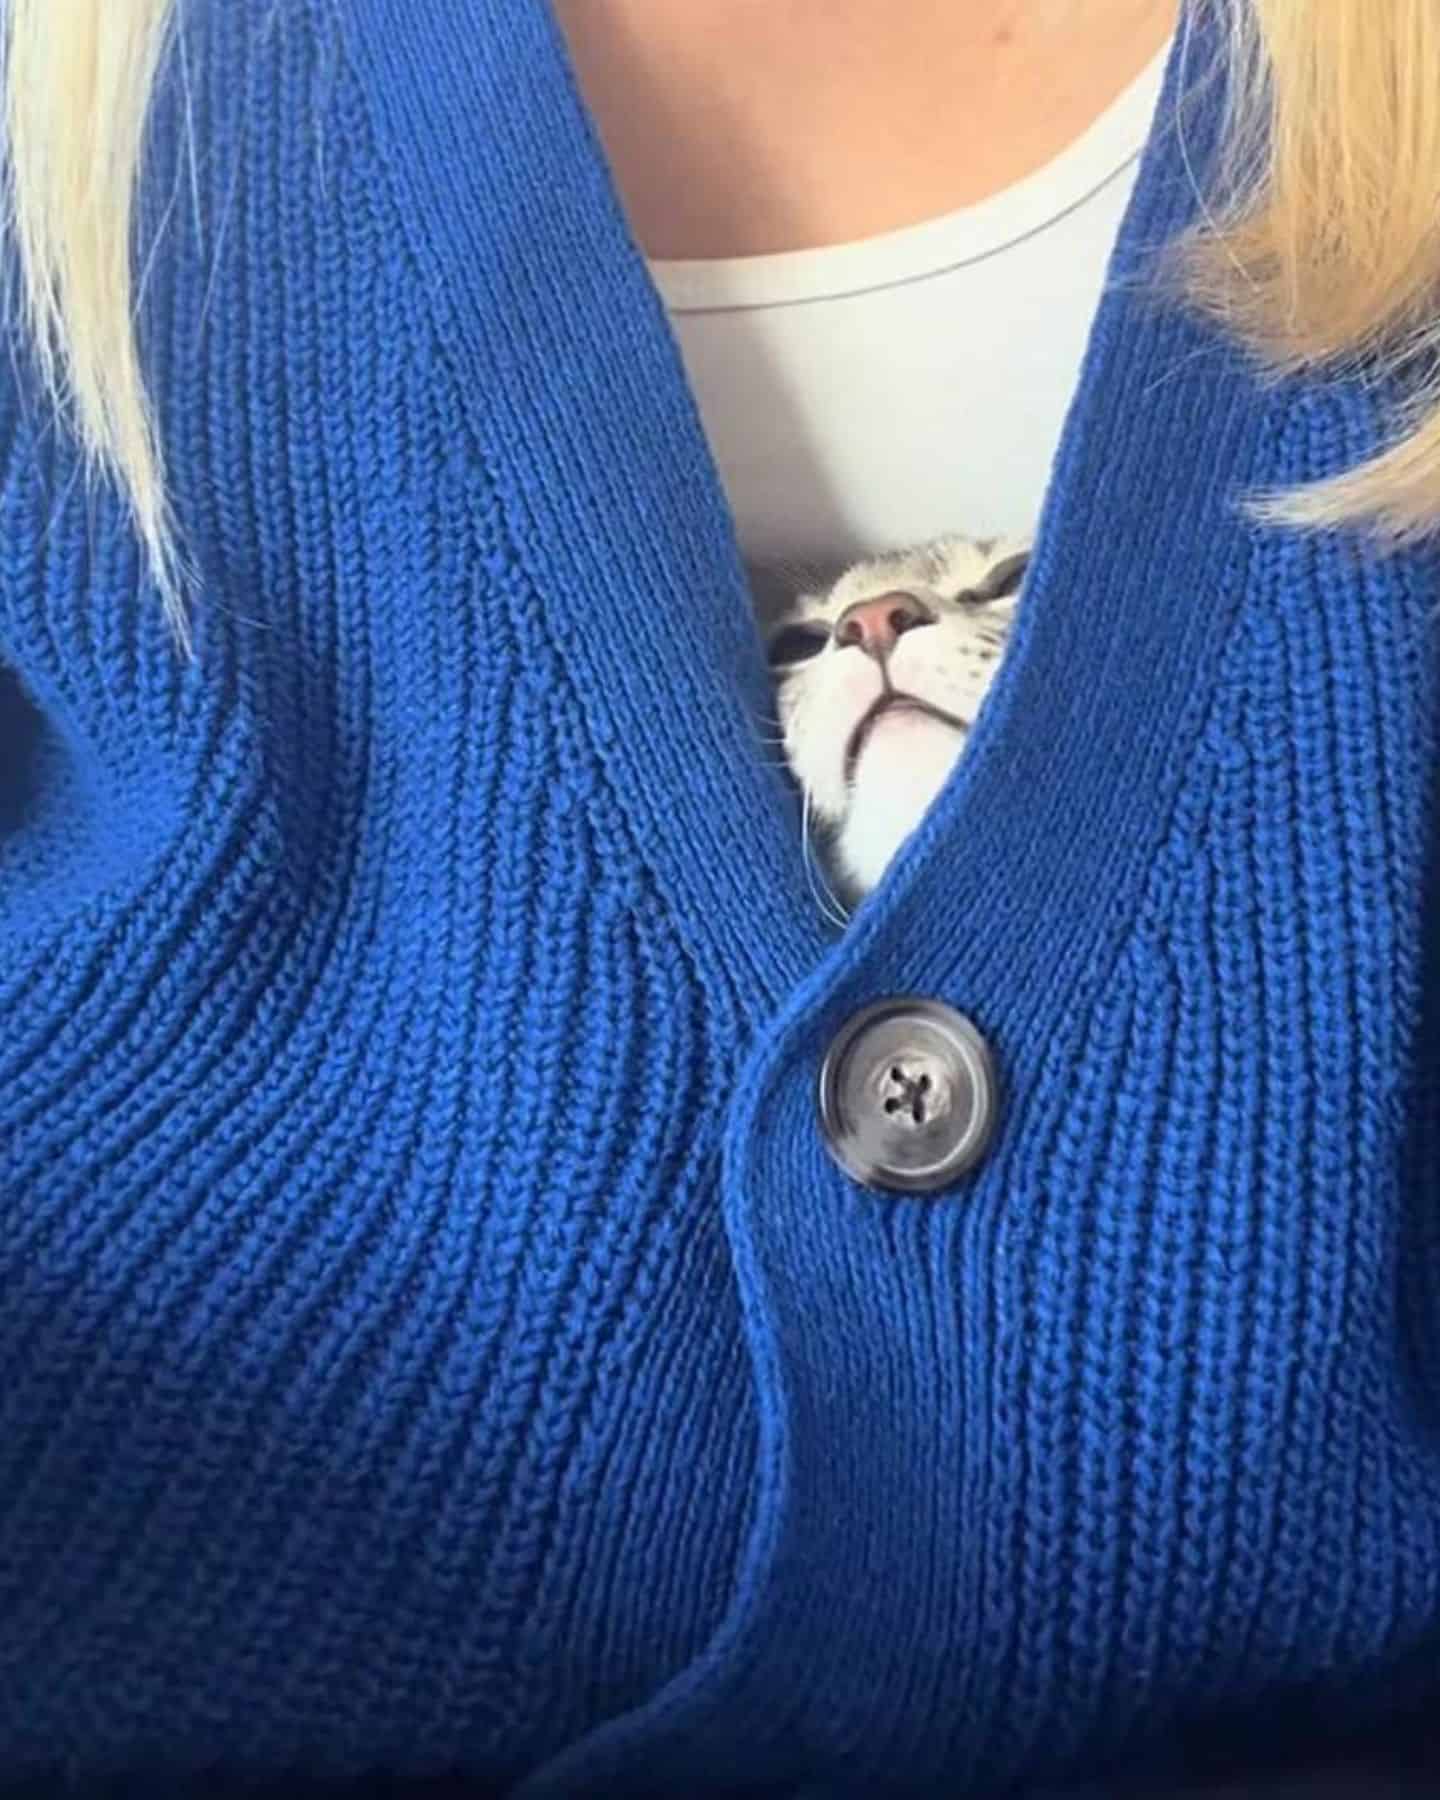 cat peeking from woman's sweatshirt